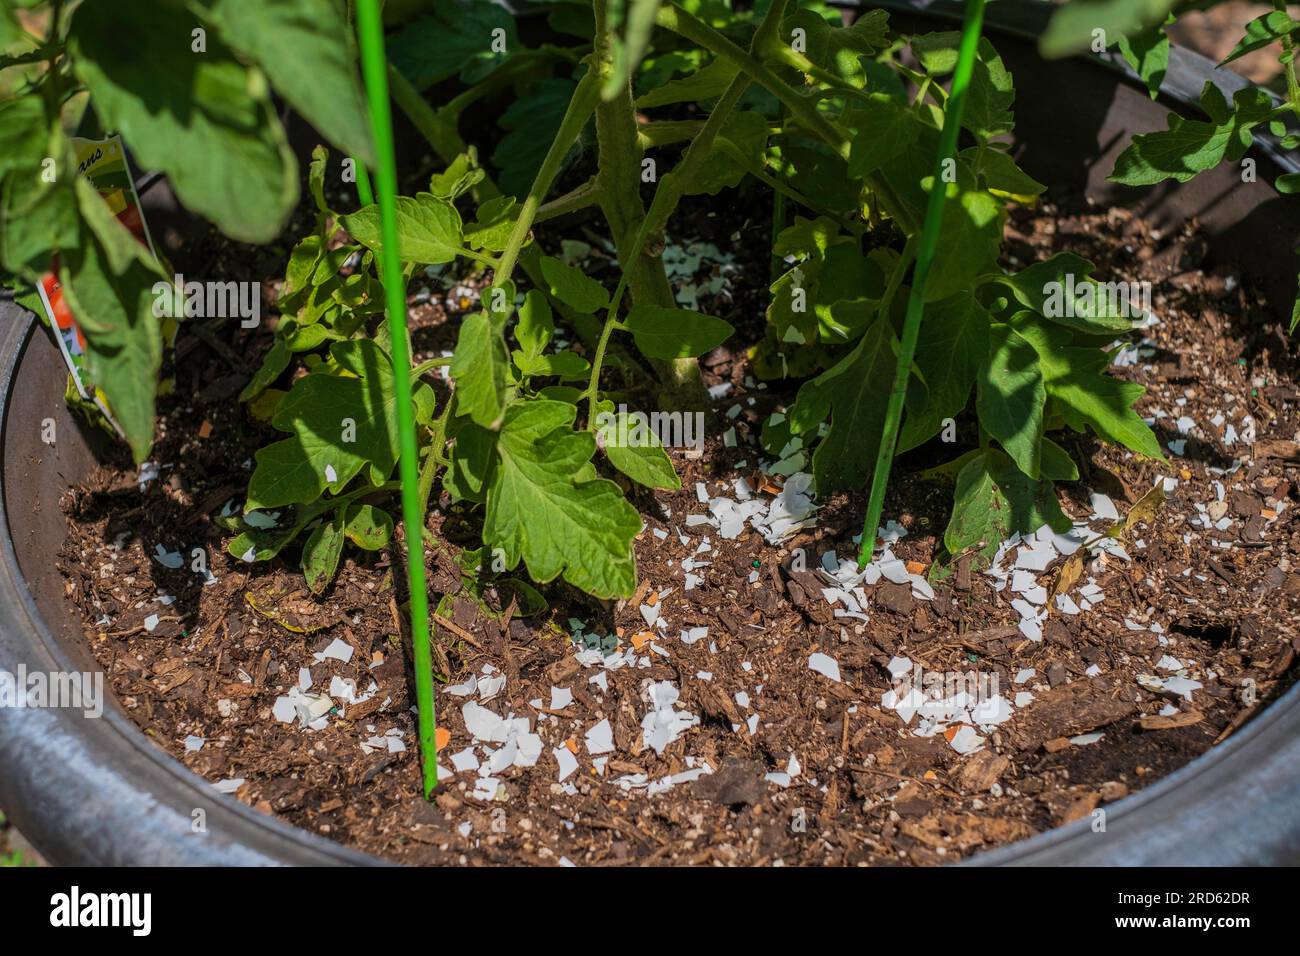 Coltivare i pomodori in pentole con gusci d'uovo tritati che forniscono calcio alla pianta. Foto Stock